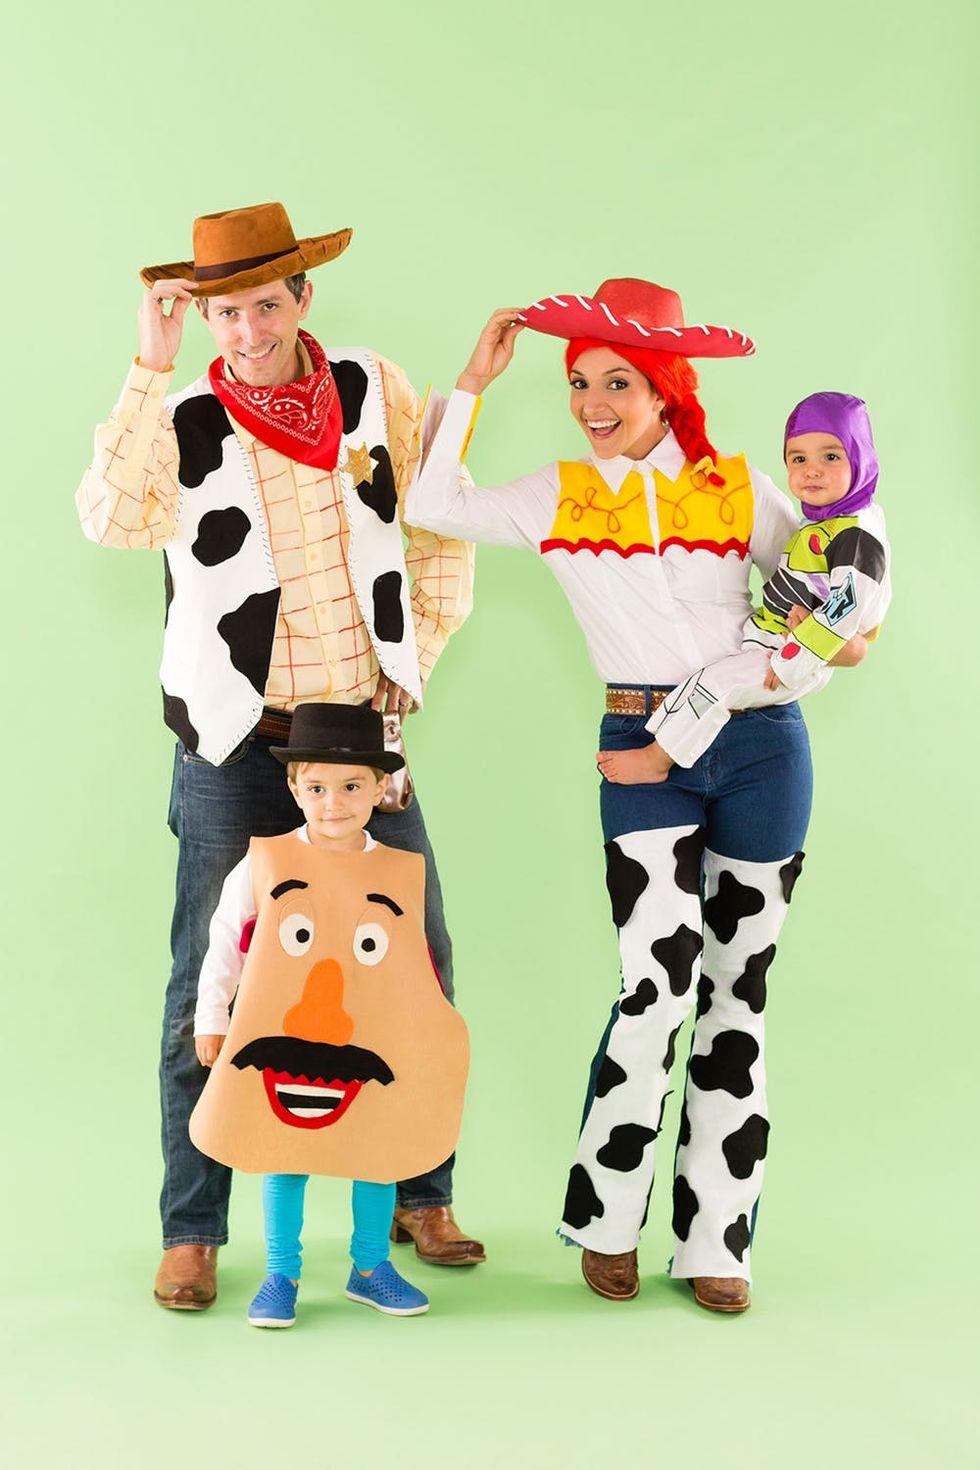 trending halloween costumes 2020 for kids 37 Last Minute Diy Halloween Costume Ideas For Kids Brit Co trending halloween costumes 2020 for kids